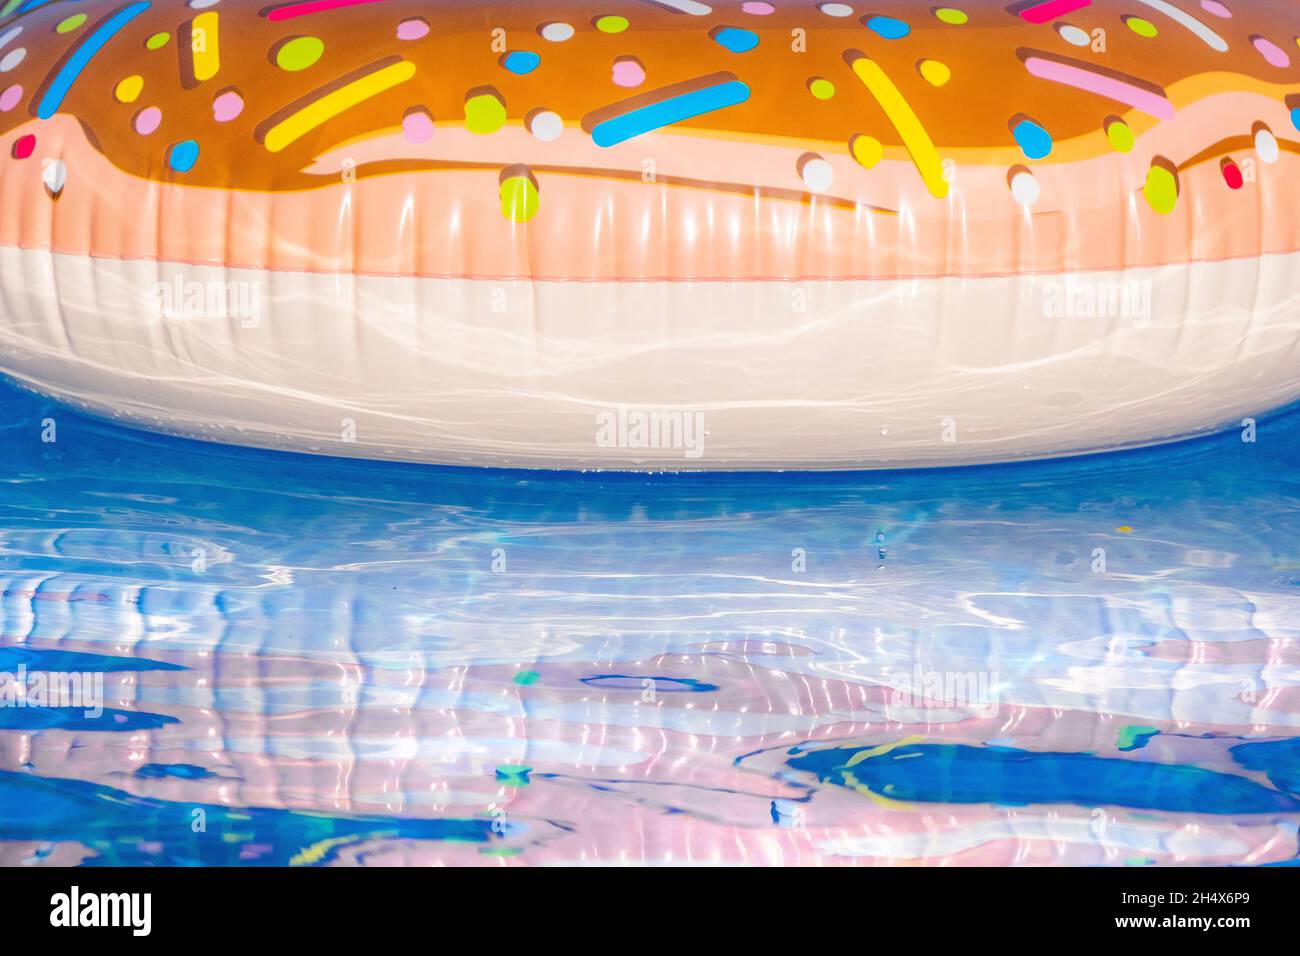 Un anneau en plastique gonflable coloré flottant dans une piscine extérieure. Banque D'Images